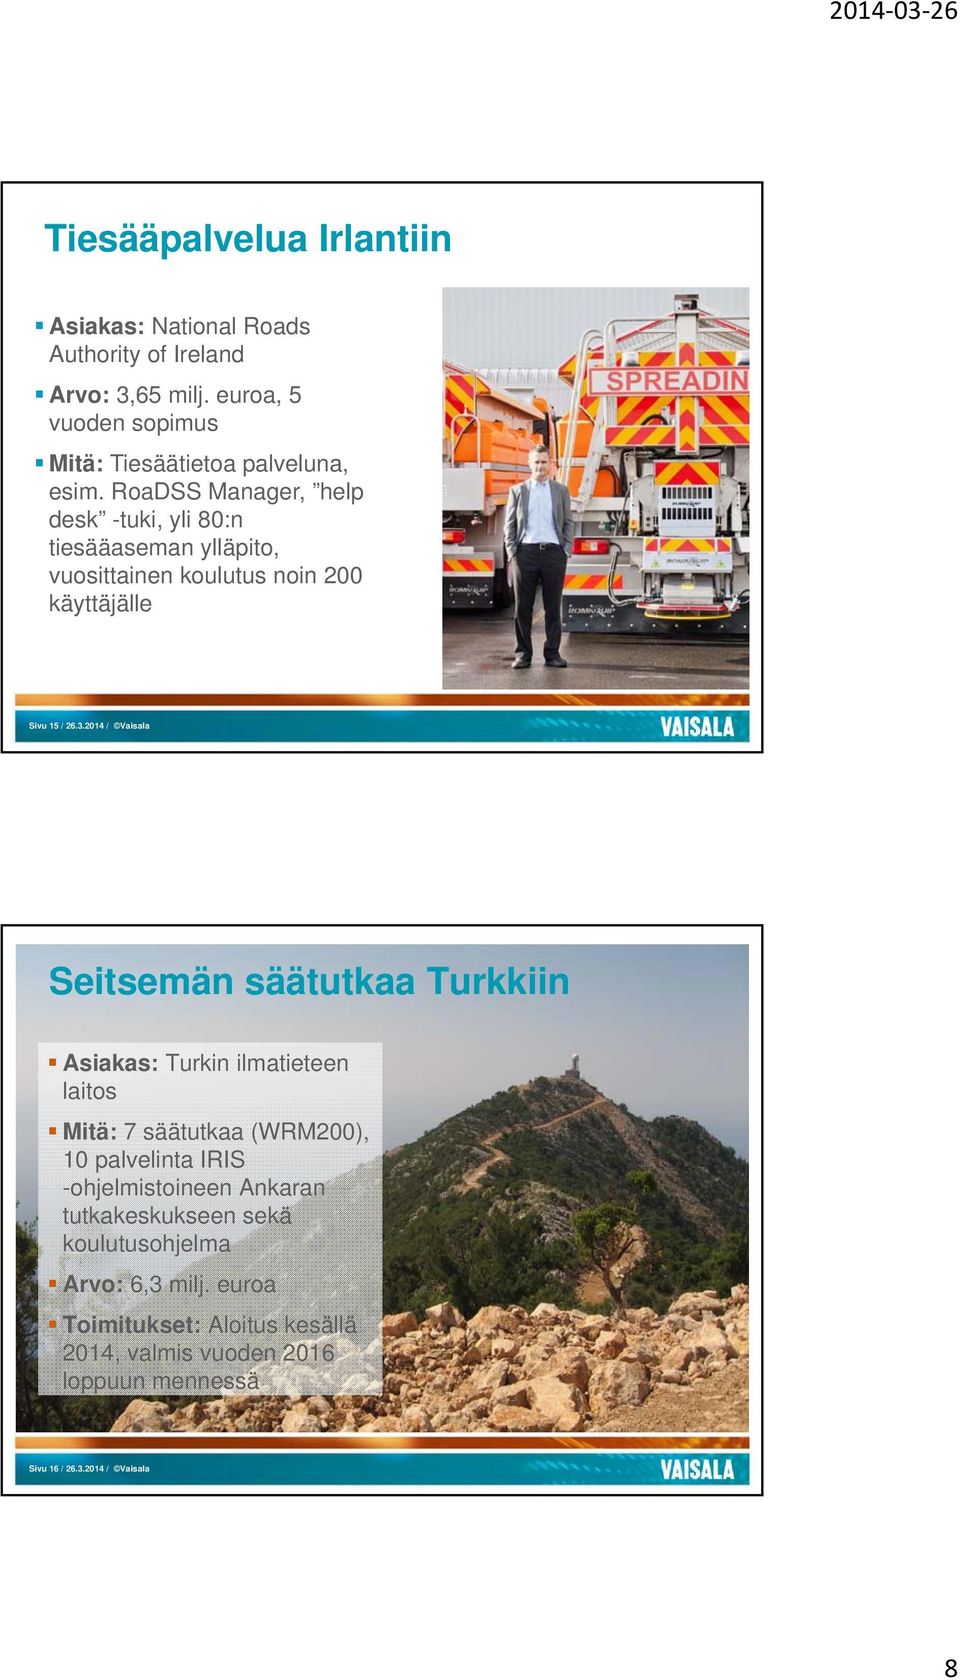 2014 / Vaisala Seitsemän säätutkaa Turkkiin Asiakas: Turkin ilmatieteen laitos Mitä: 7 säätutkaa (WRM200), 10 palvelinta IRIS -ohjelmistoineen